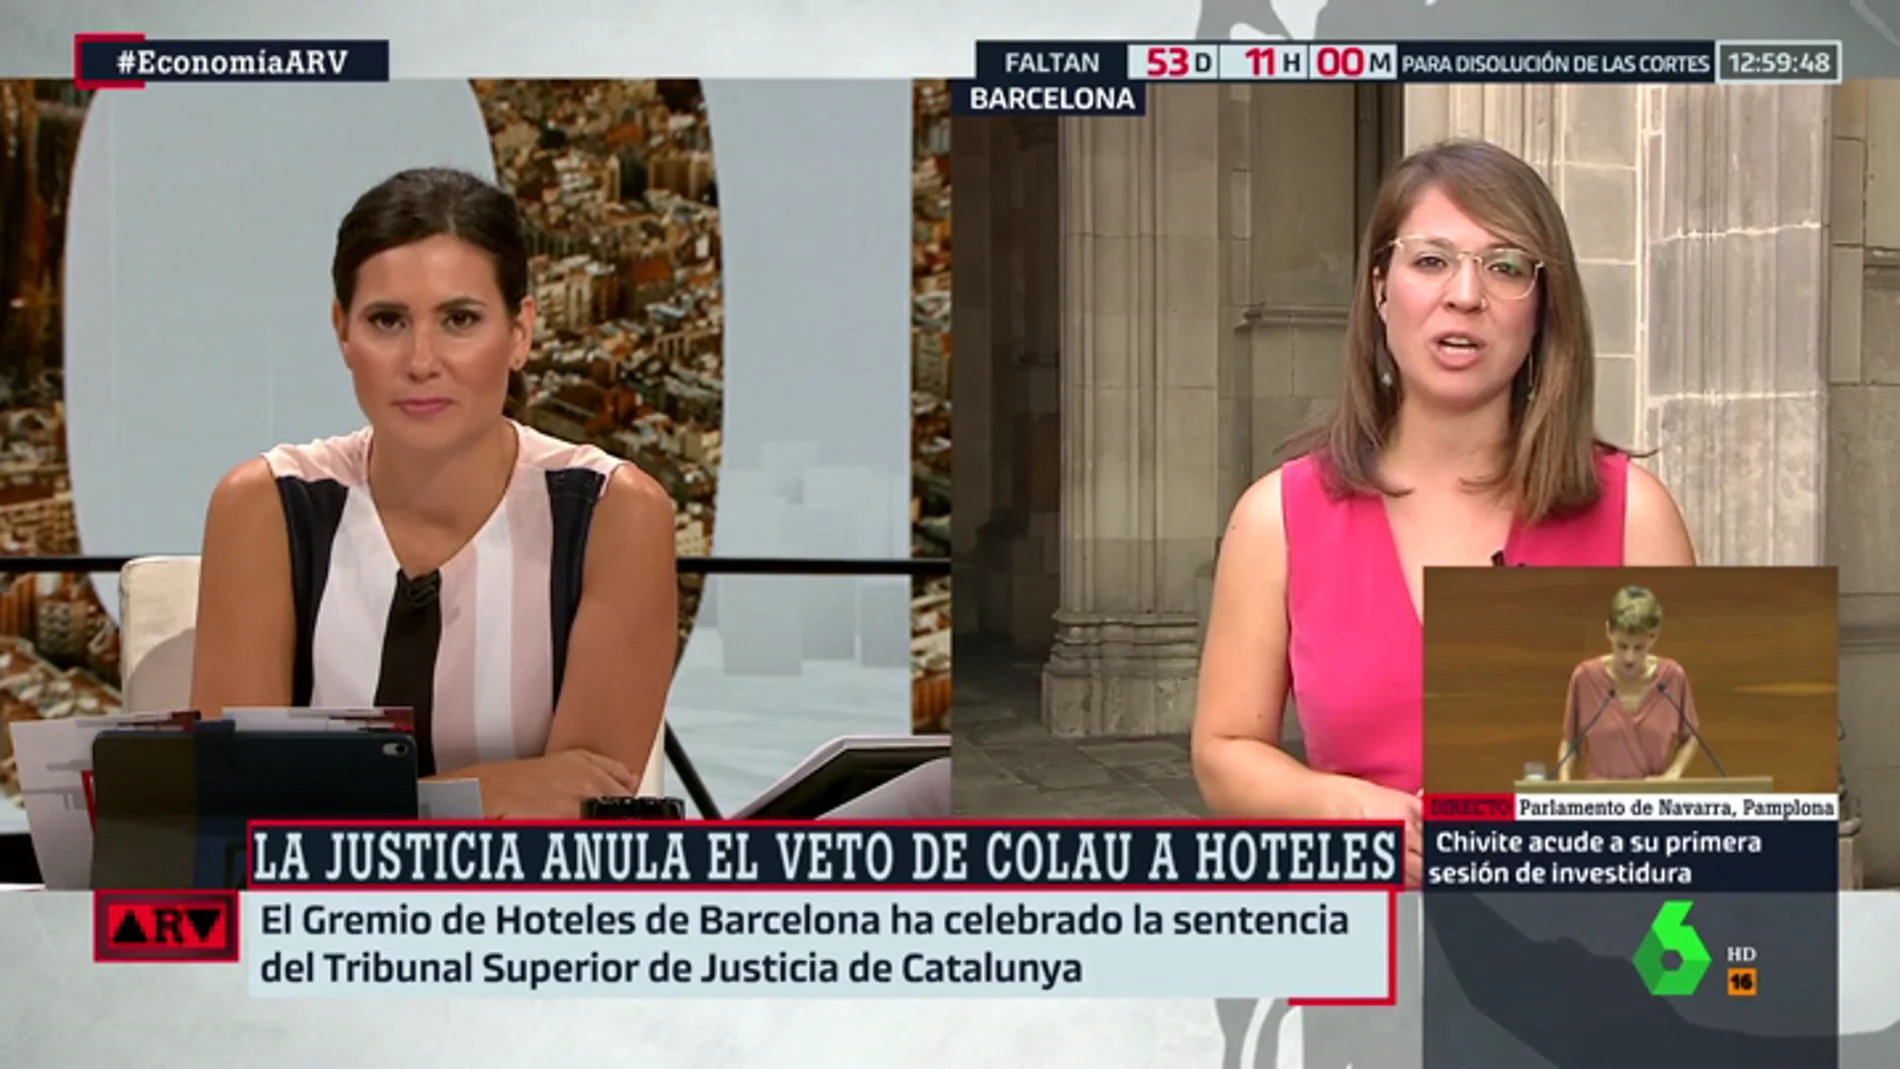 Janet Sanz, teniente de alcalde en Barcelona: "La ciudad era una barra libre de hoteles y había que poner orden"